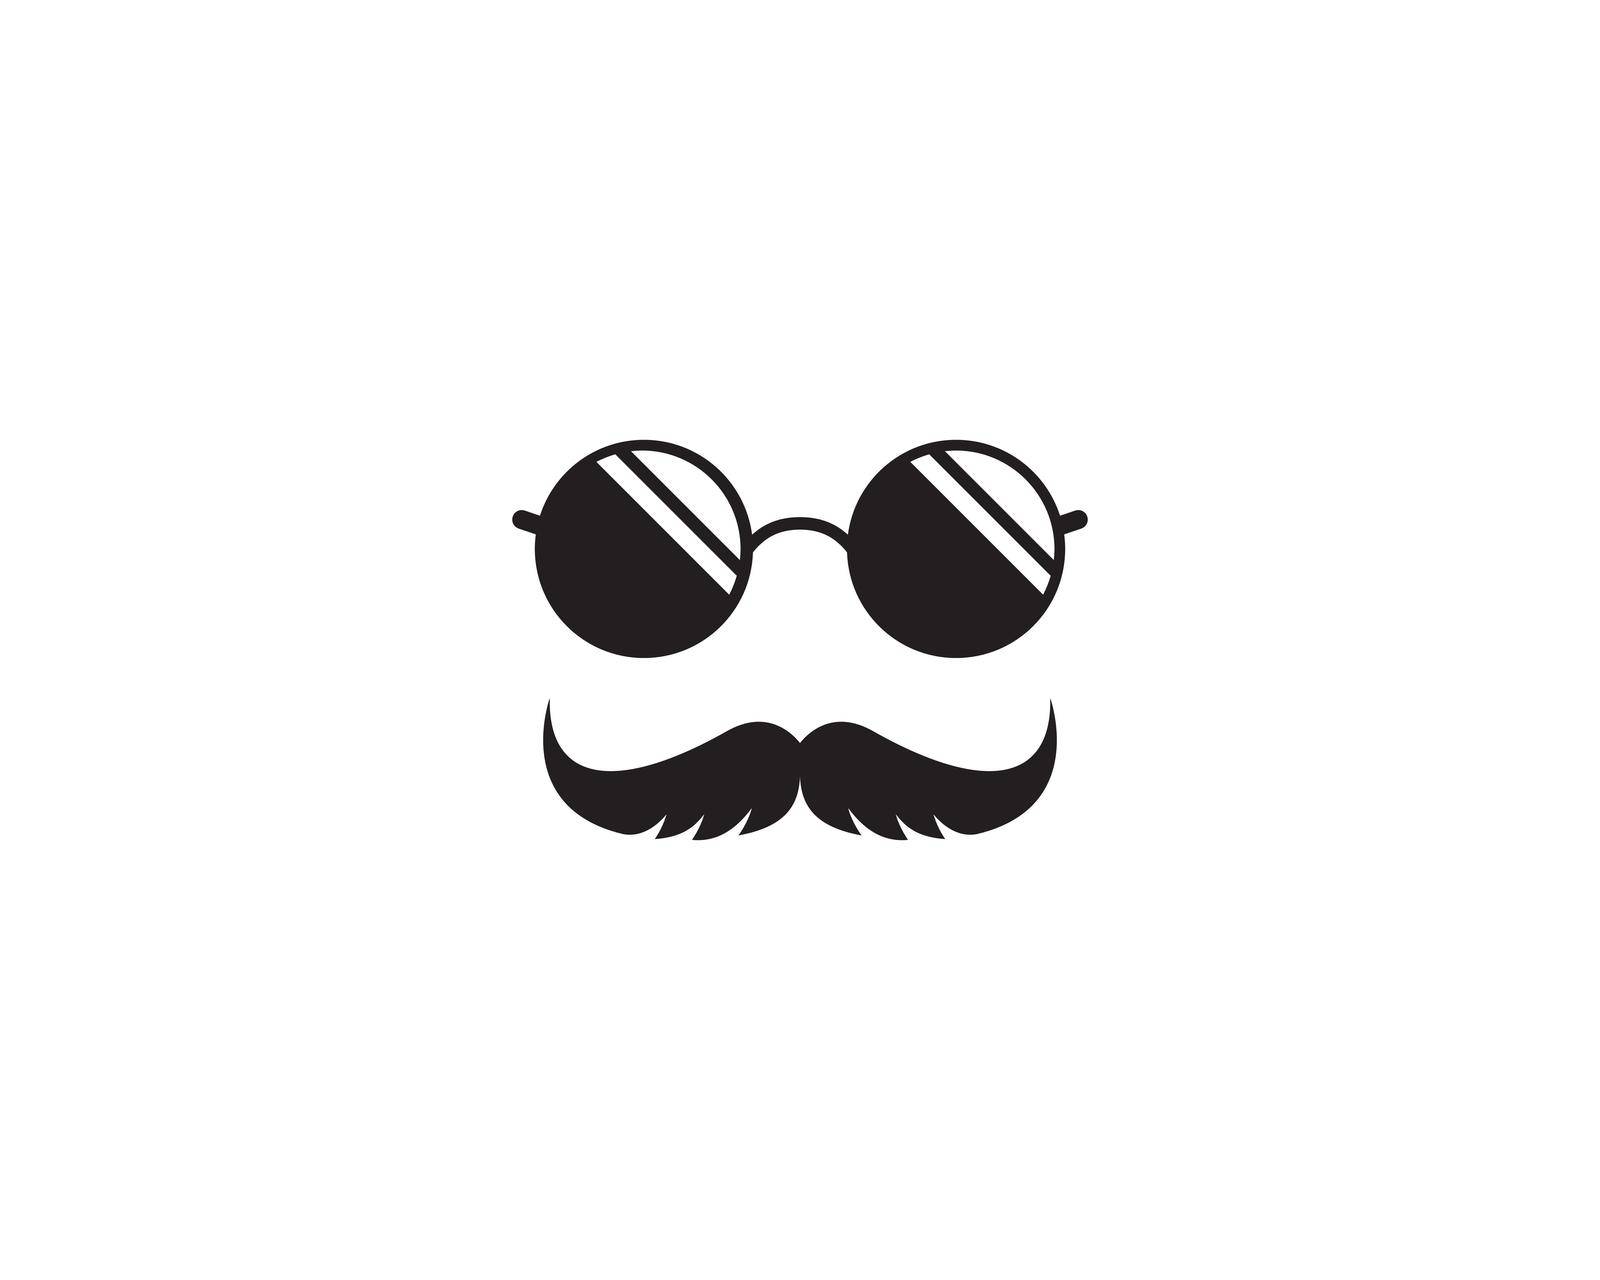 Mustache logo icon by Attades19